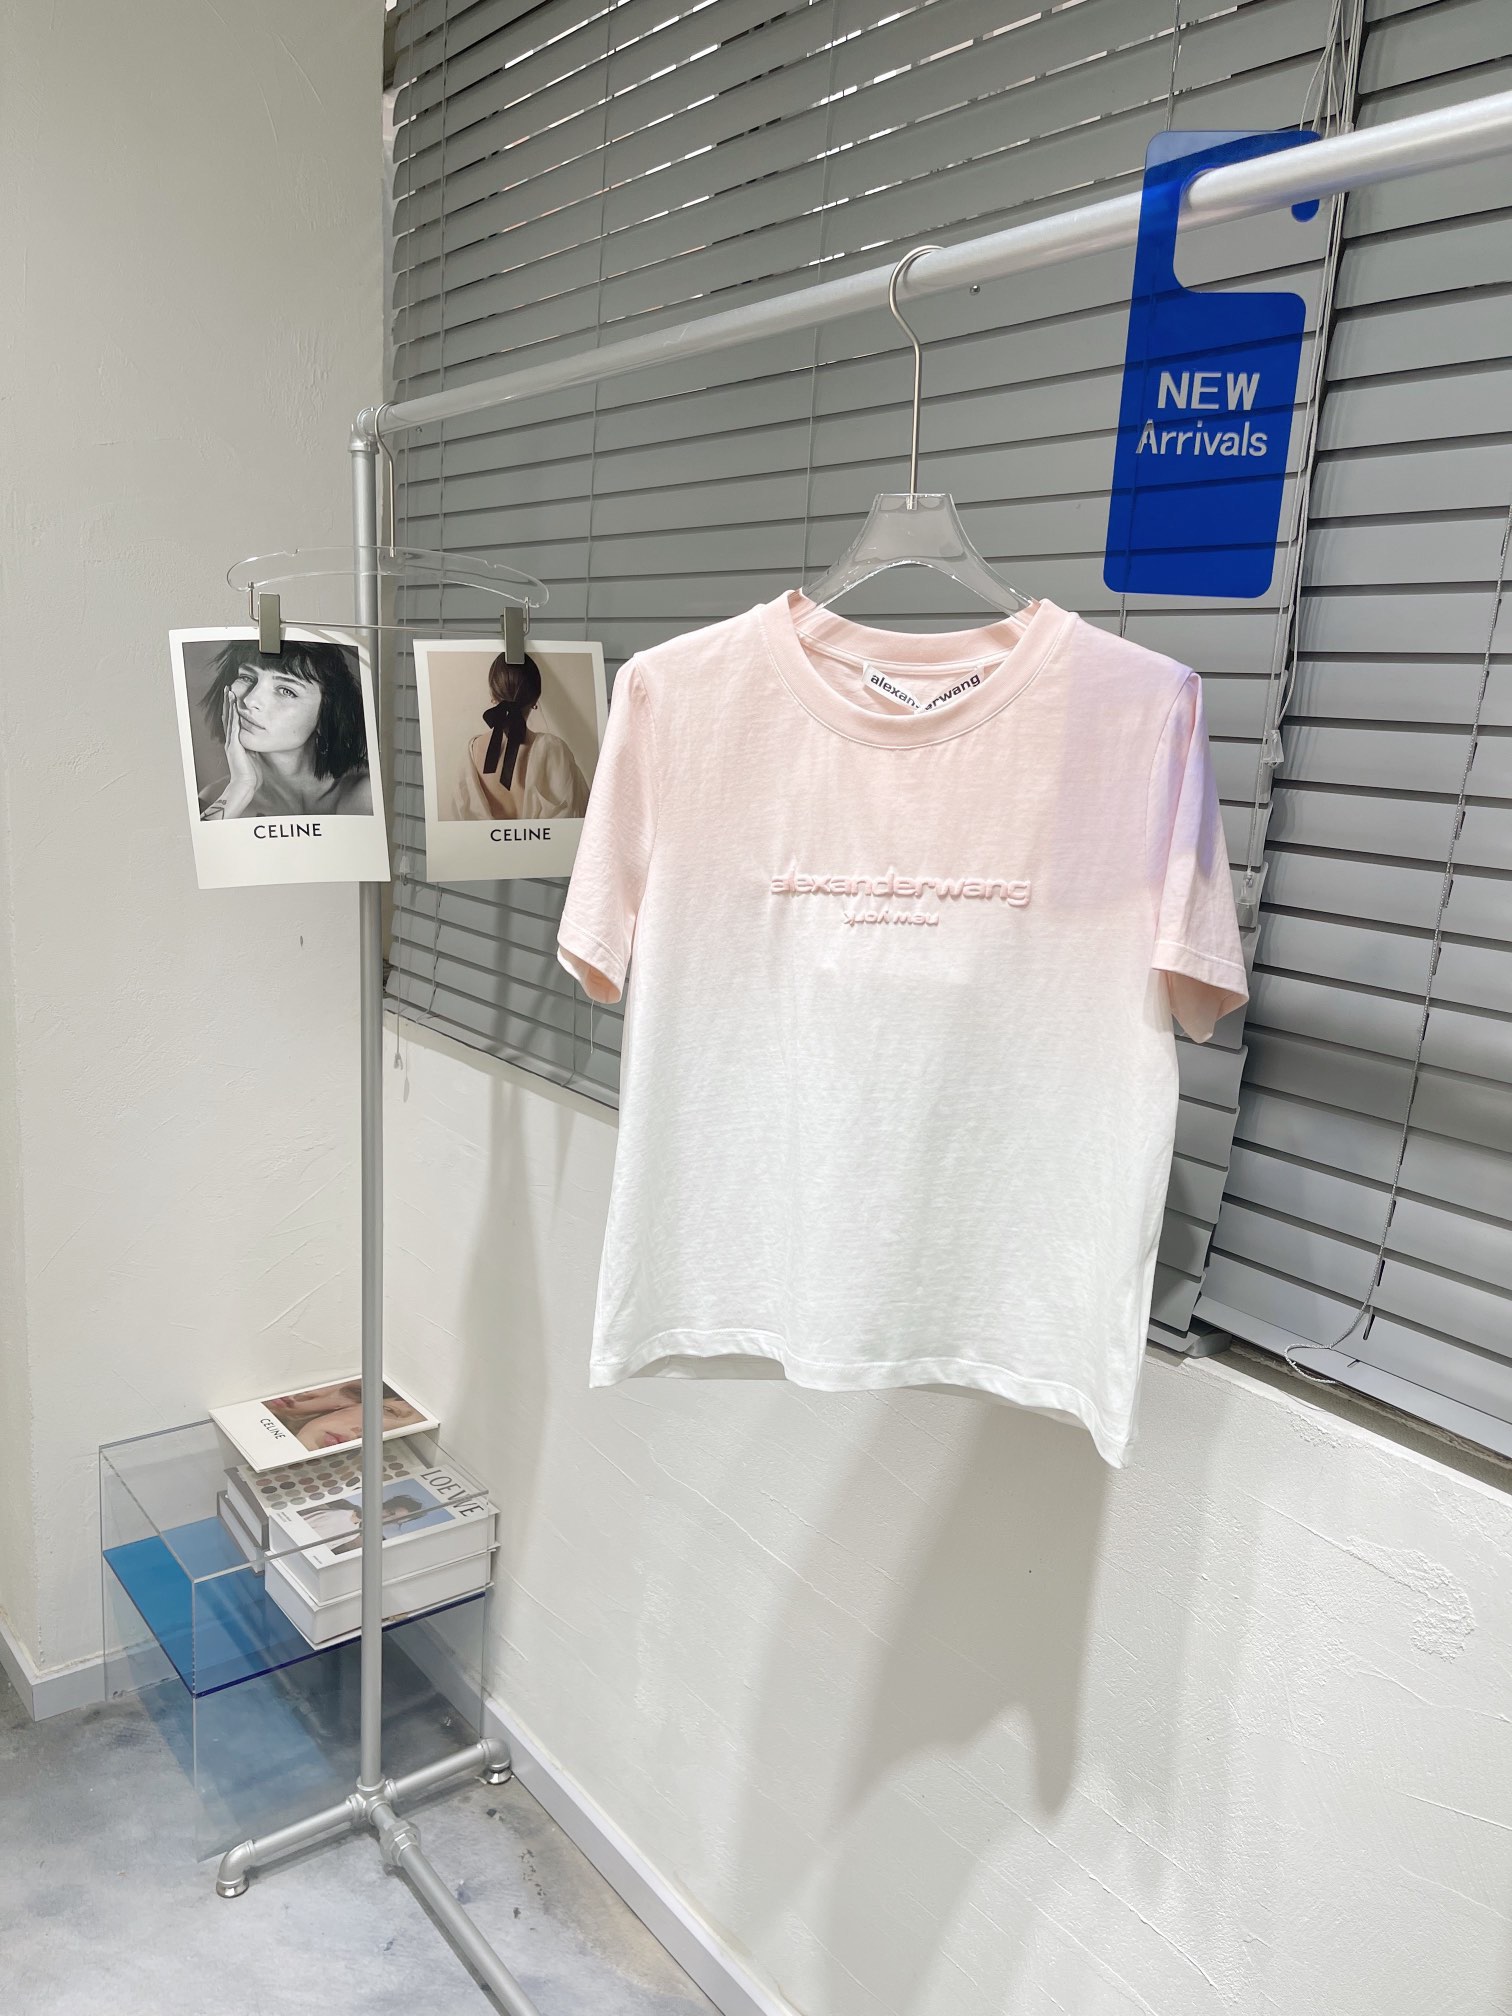 品質保証安い アレキサンダーワン レディース tシャツ偽物 トップス 純綿 ファッション 人気新作 ピンク_1